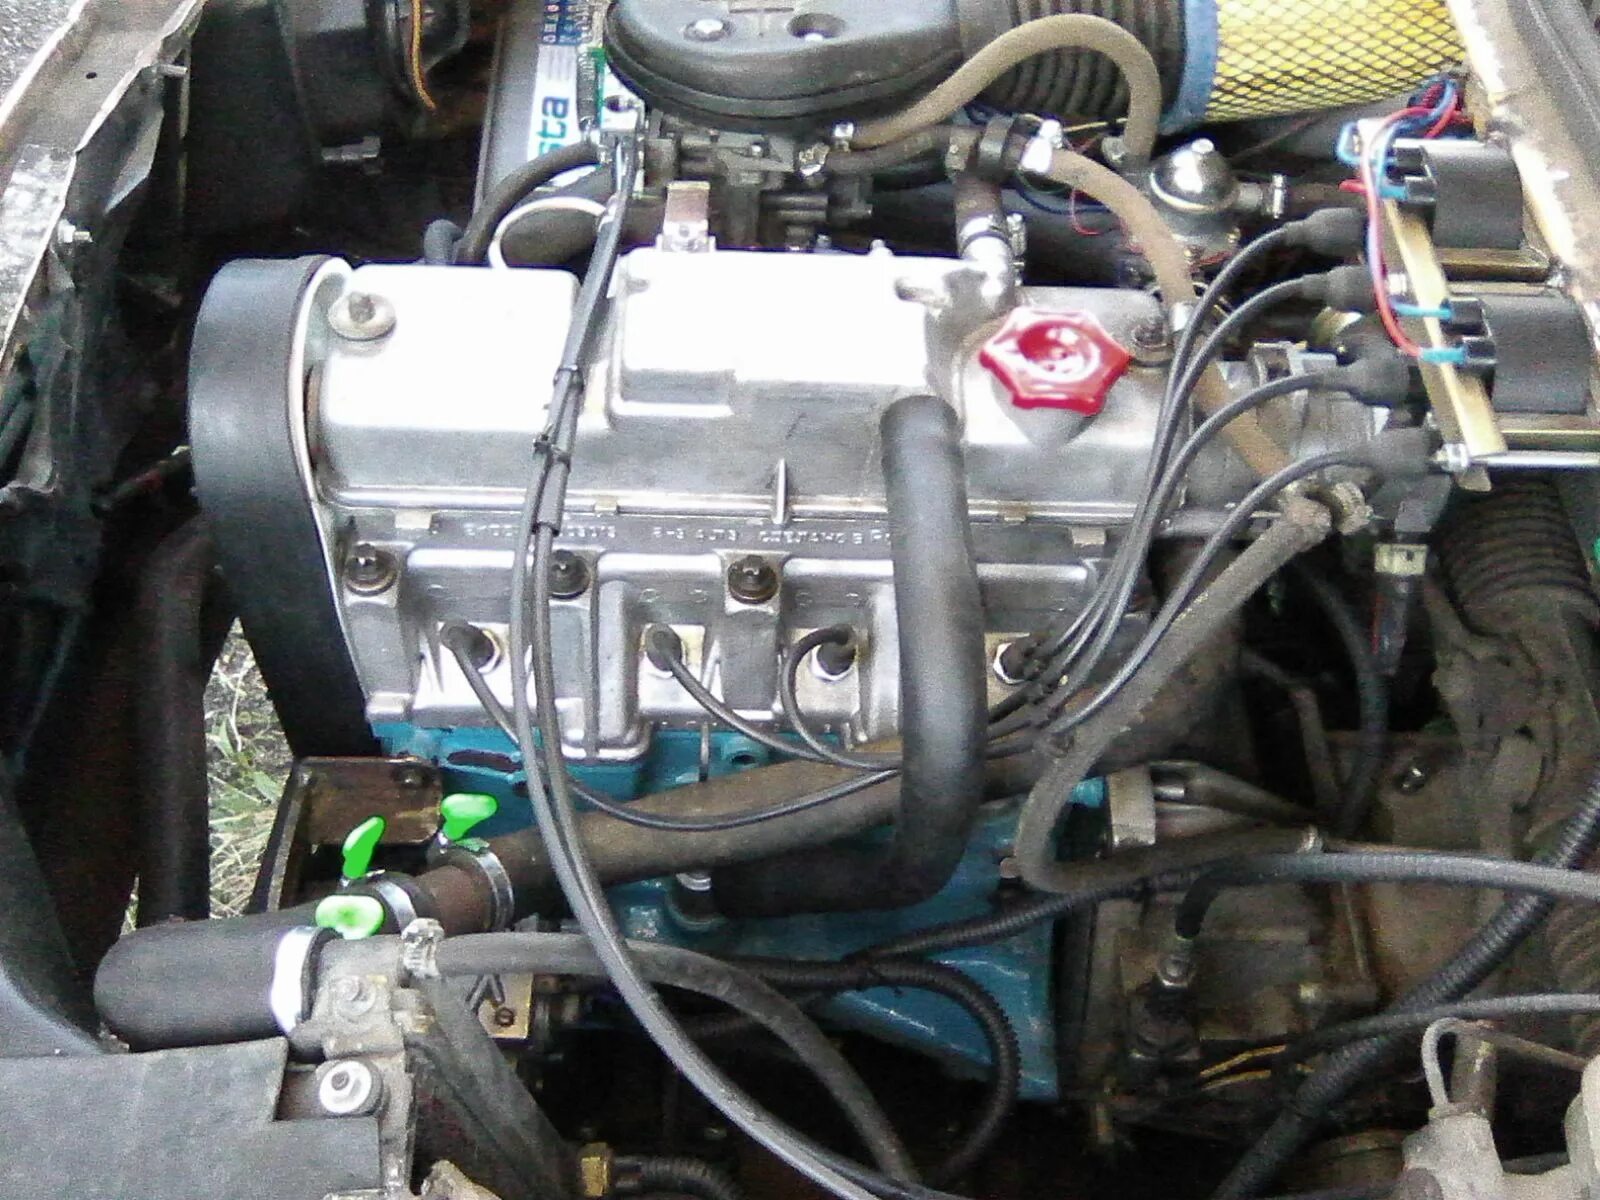 Двигатель 21083 инжектор 8. Мотор 21083 инжектор. Инжекторный двигатель ВАЗ 21083. Мотор ВАЗ 21083 инжектор.